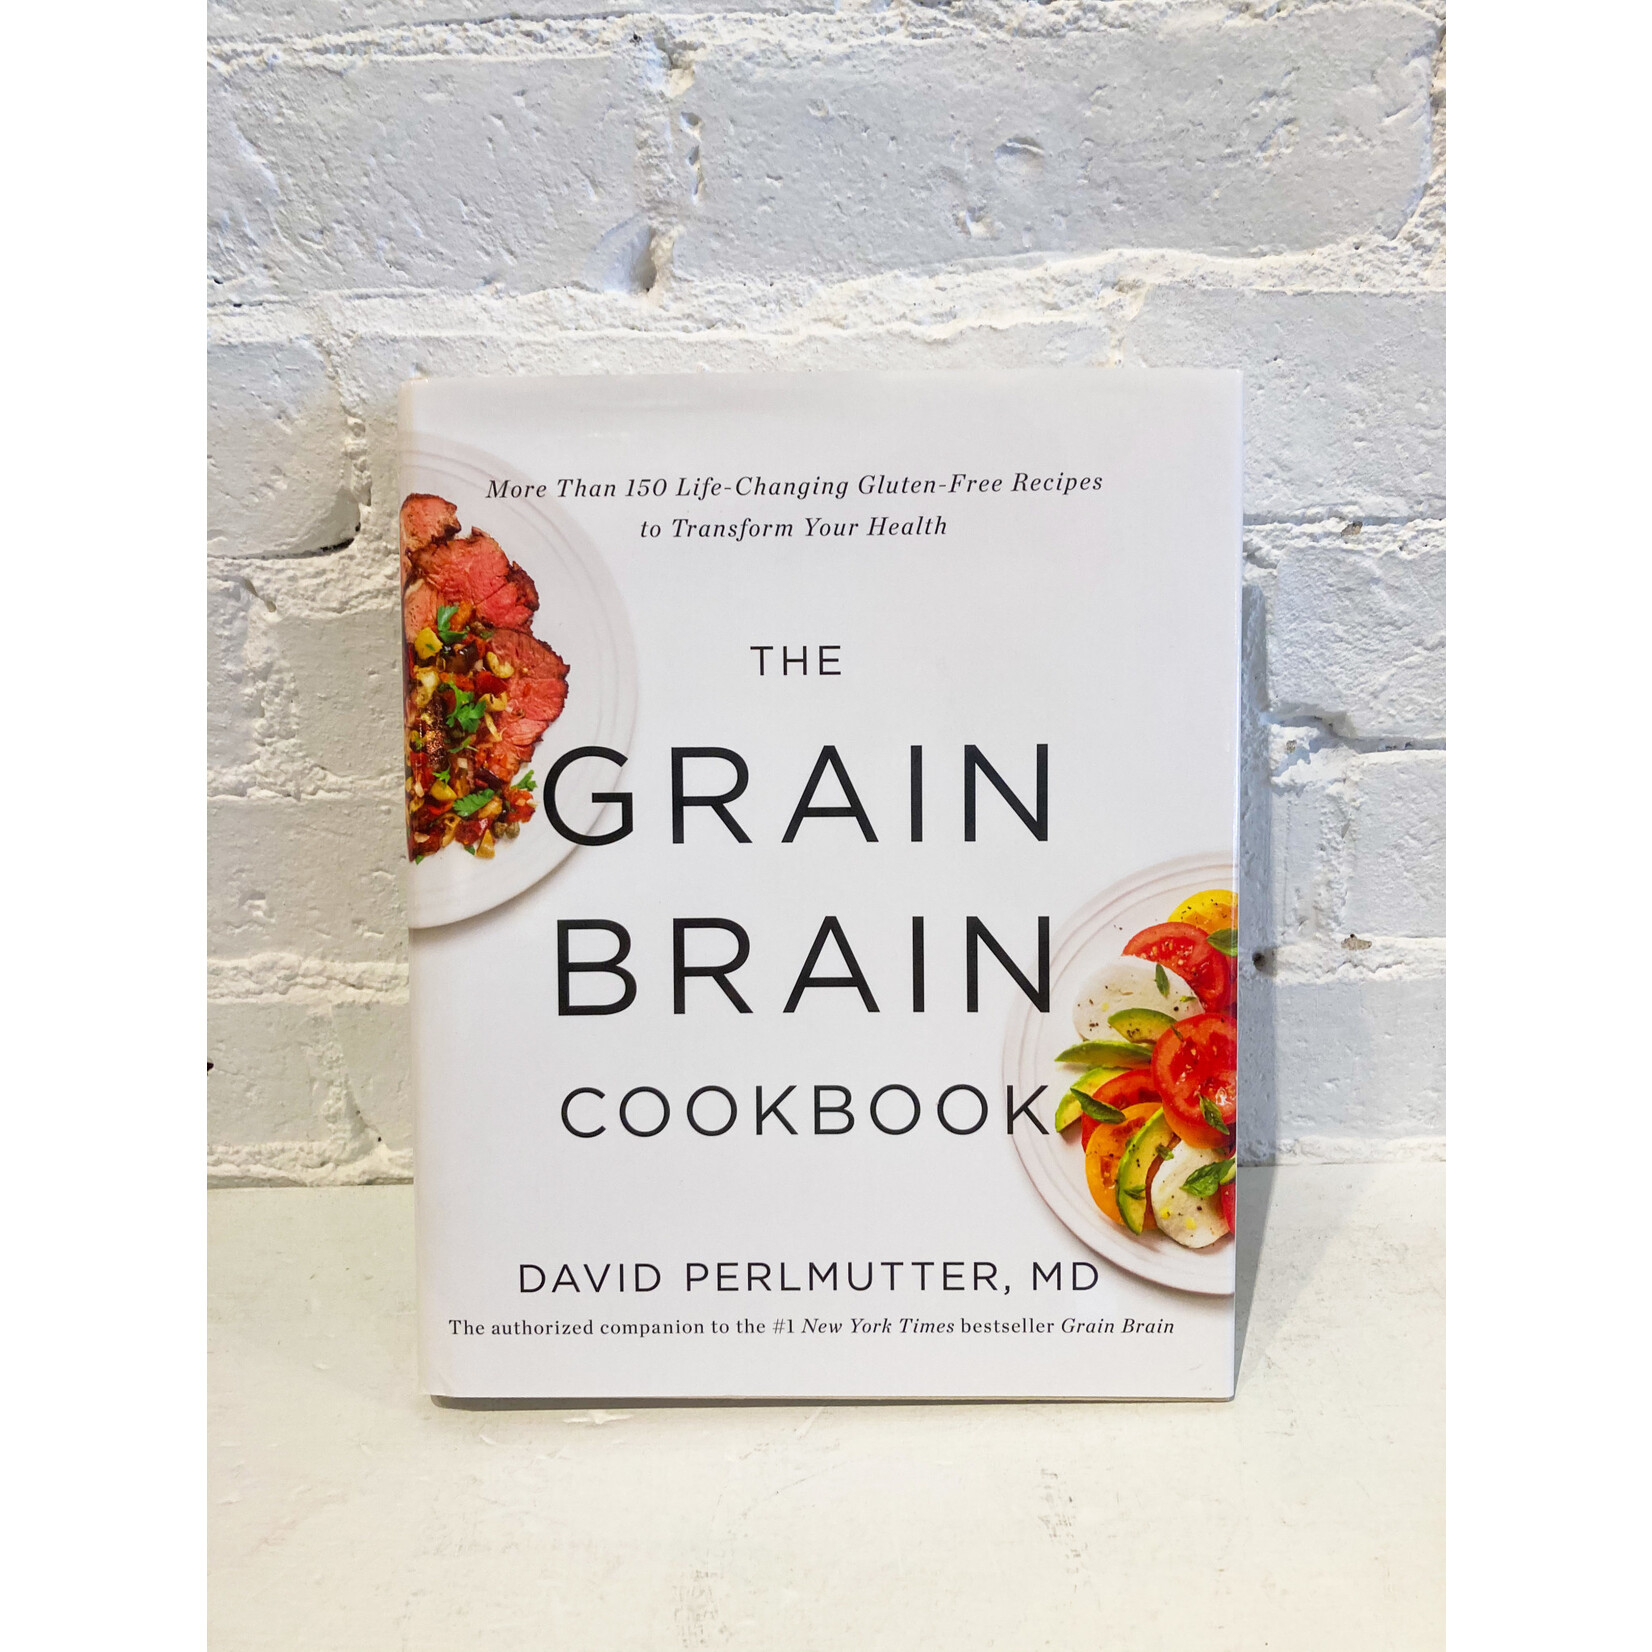 The Grain Brain Cookbook by David Perlmutter, MD